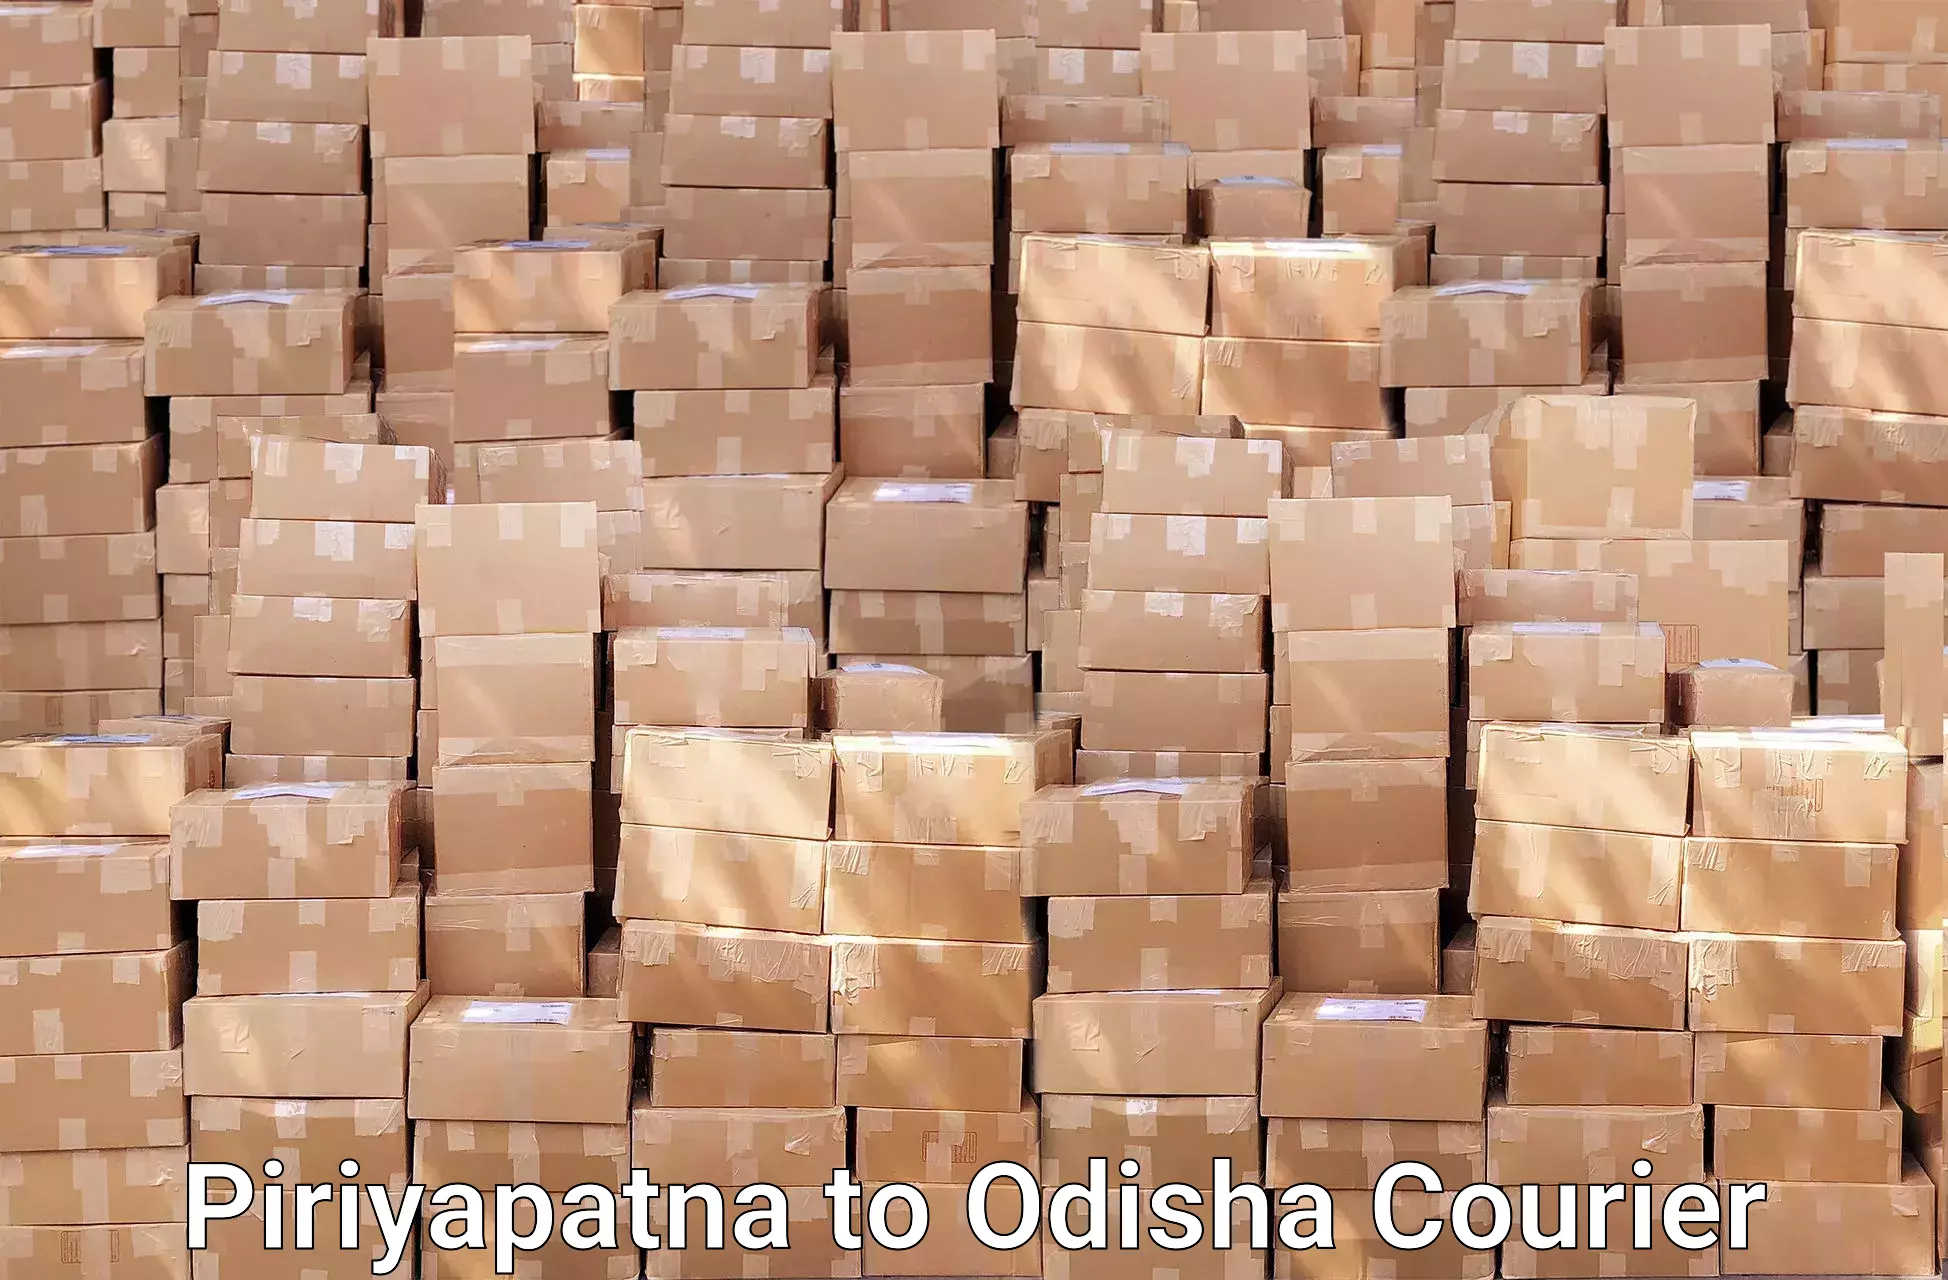 Furniture moving experts Piriyapatna to Agarpada